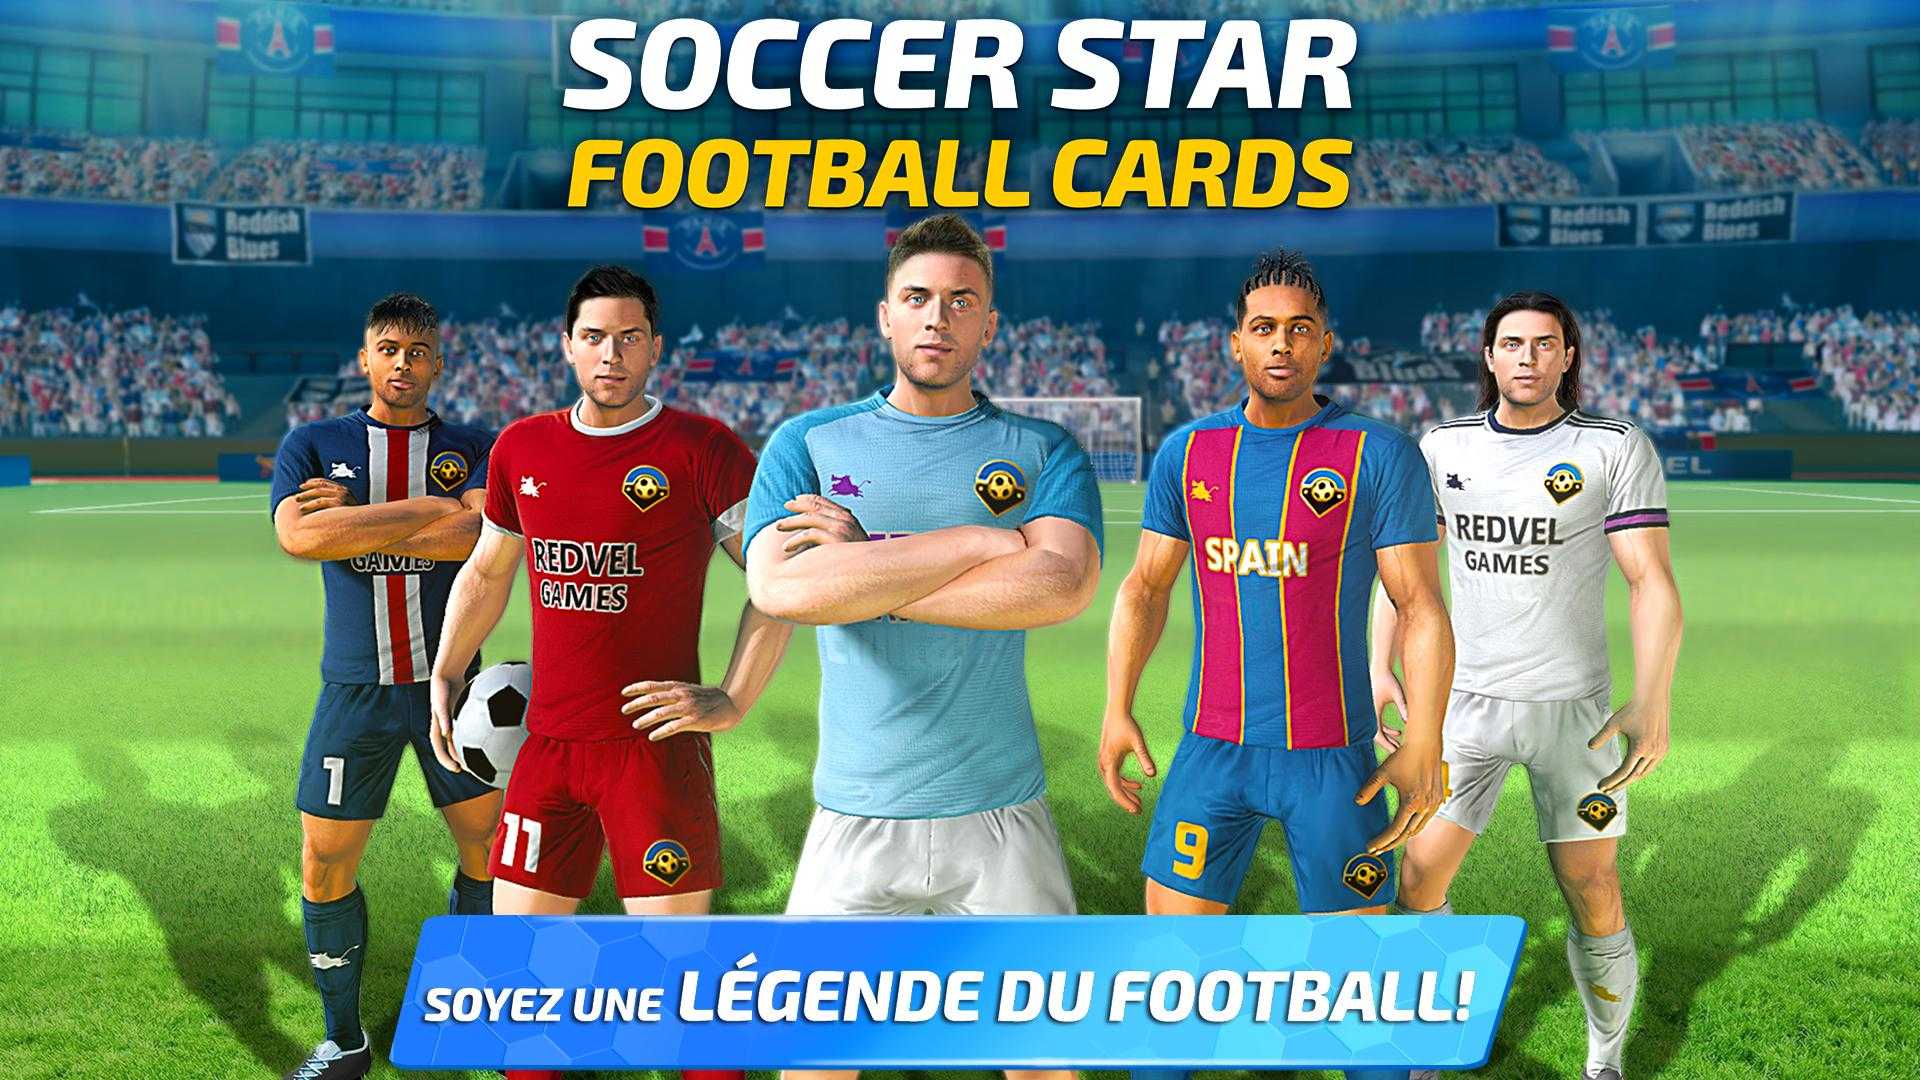 Soccer Star 2020 Football Cards: The soccer v1.2.2.2013 (Mod Apk)